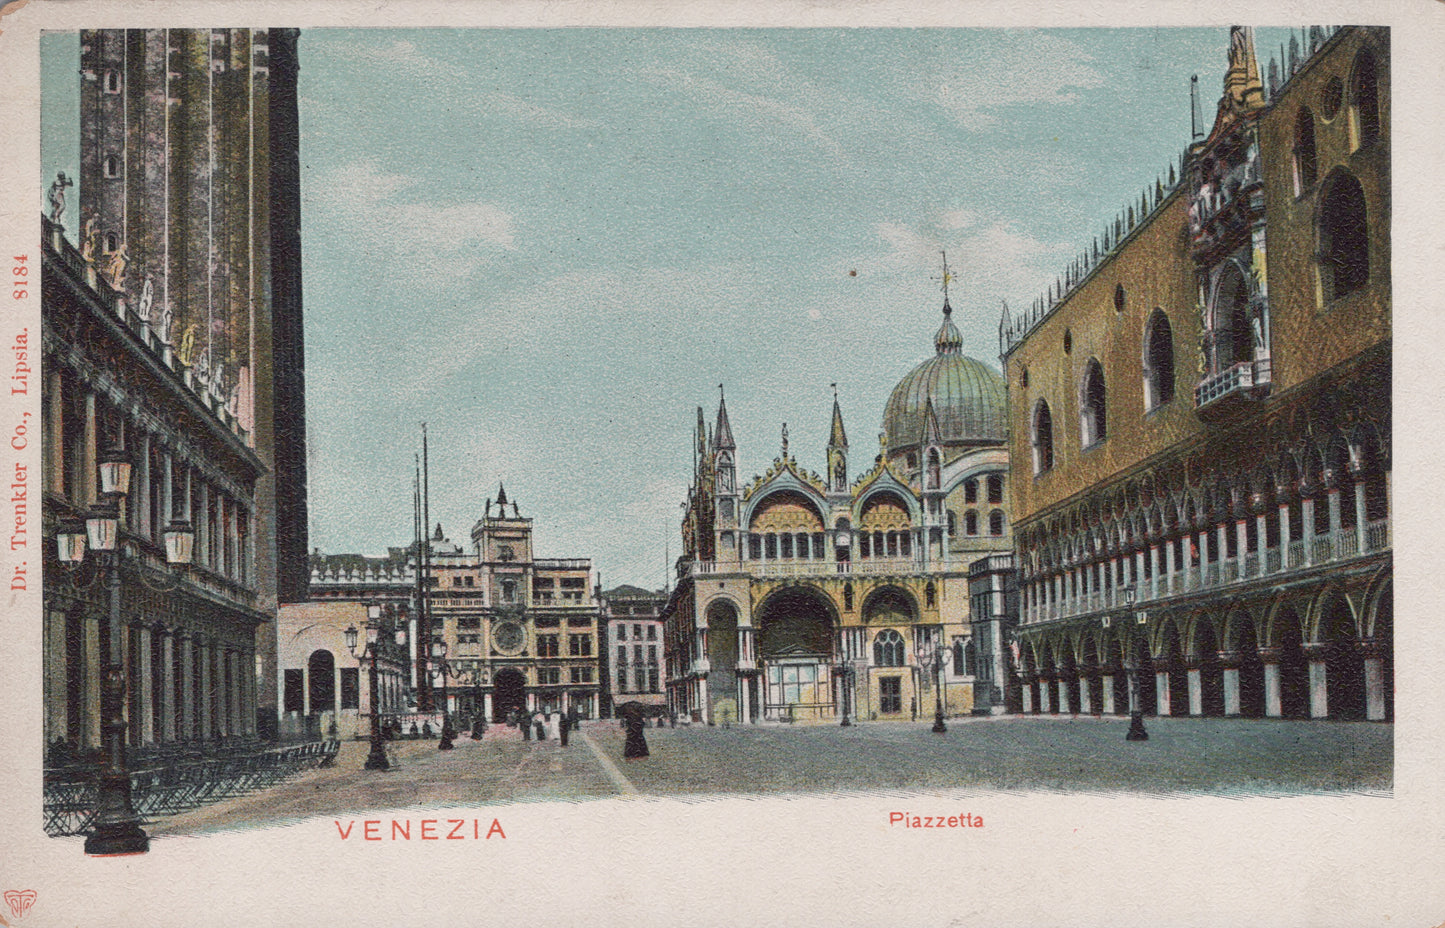 Piazzetta, Venice